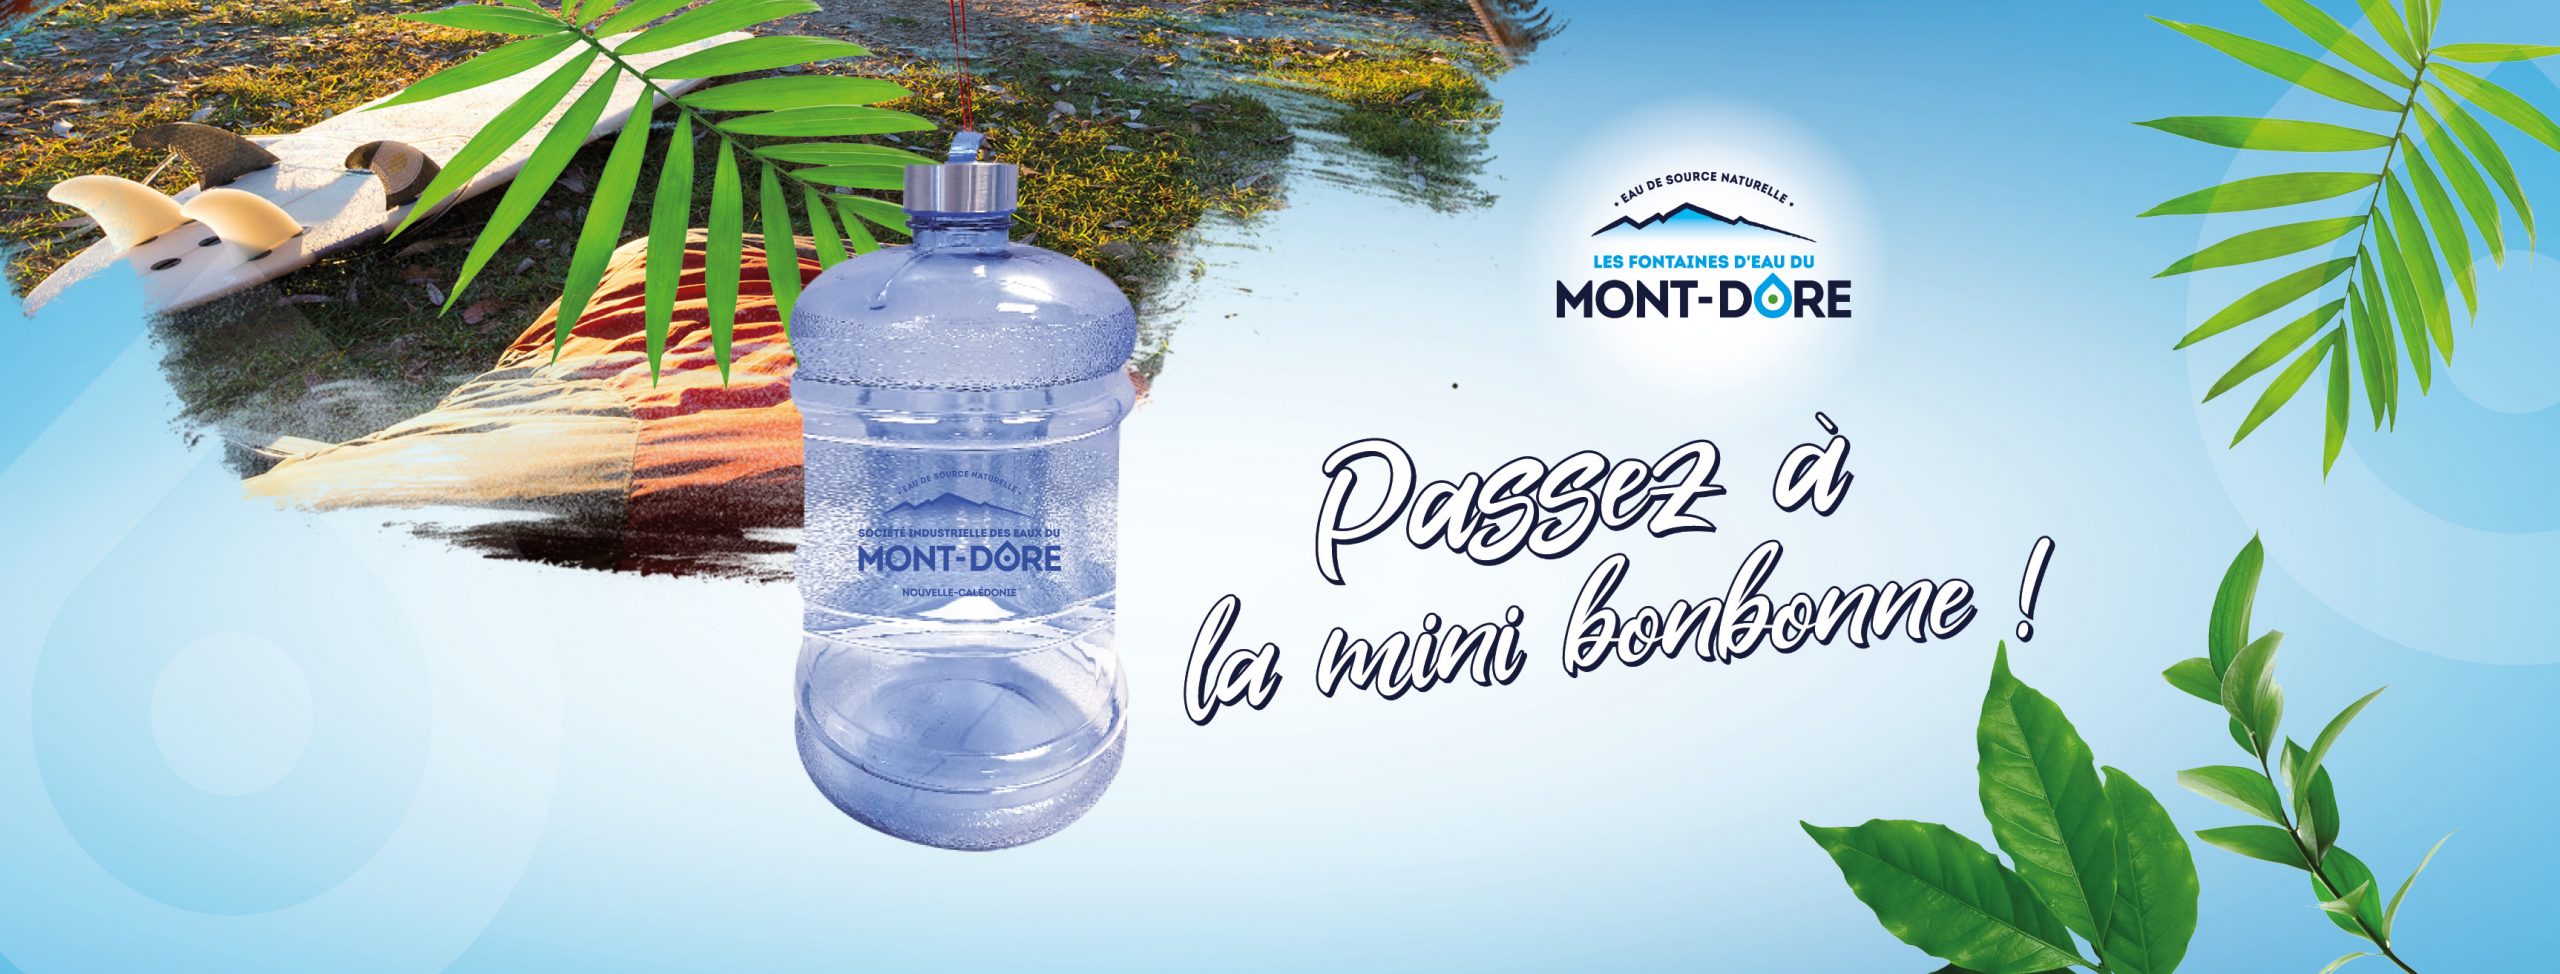 FONTAINES D'EAU - Fontaines d'eau du Mont-Dore